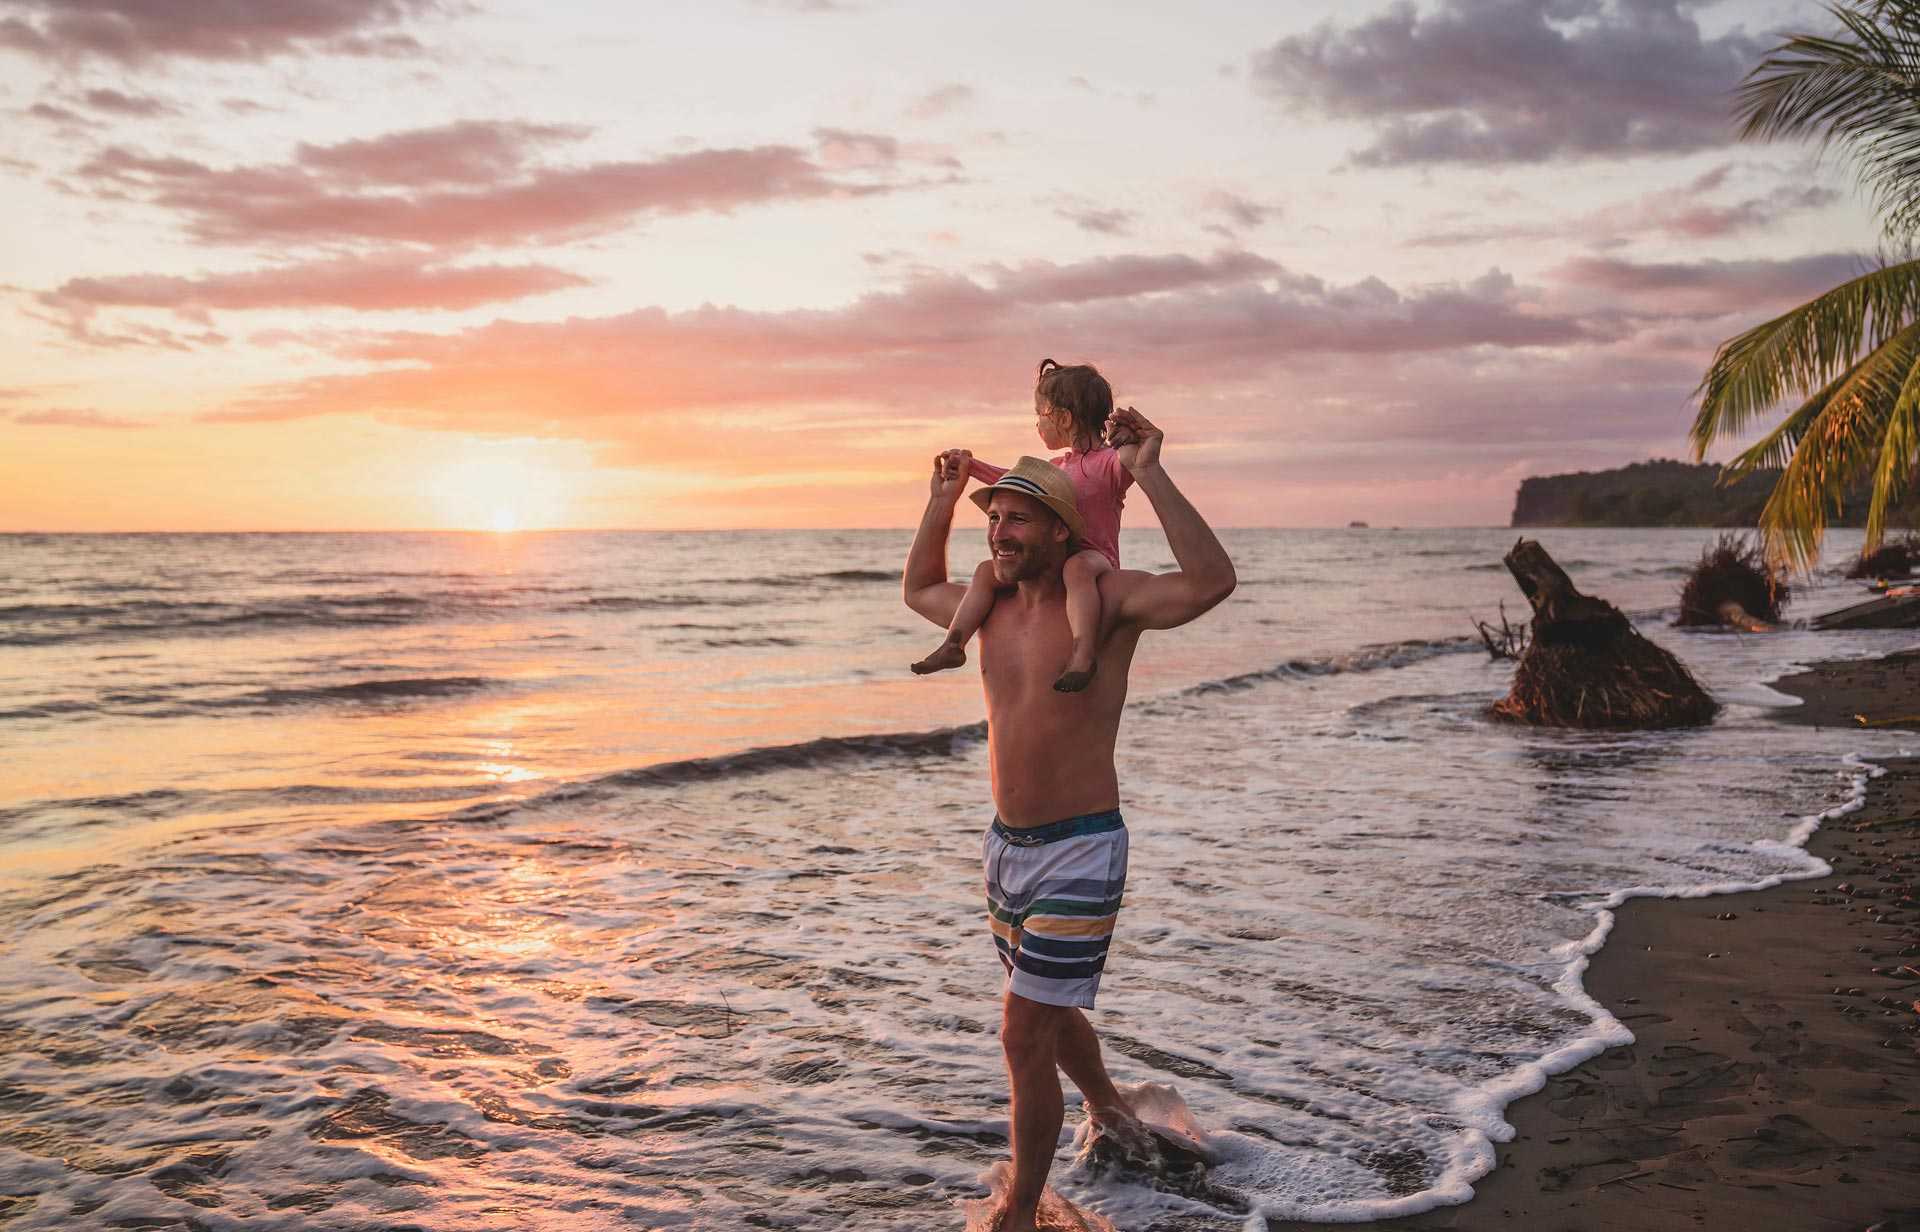 Père portant sa fille sur ses épaules, sur la plage du Costa Rica au coucher du soleil